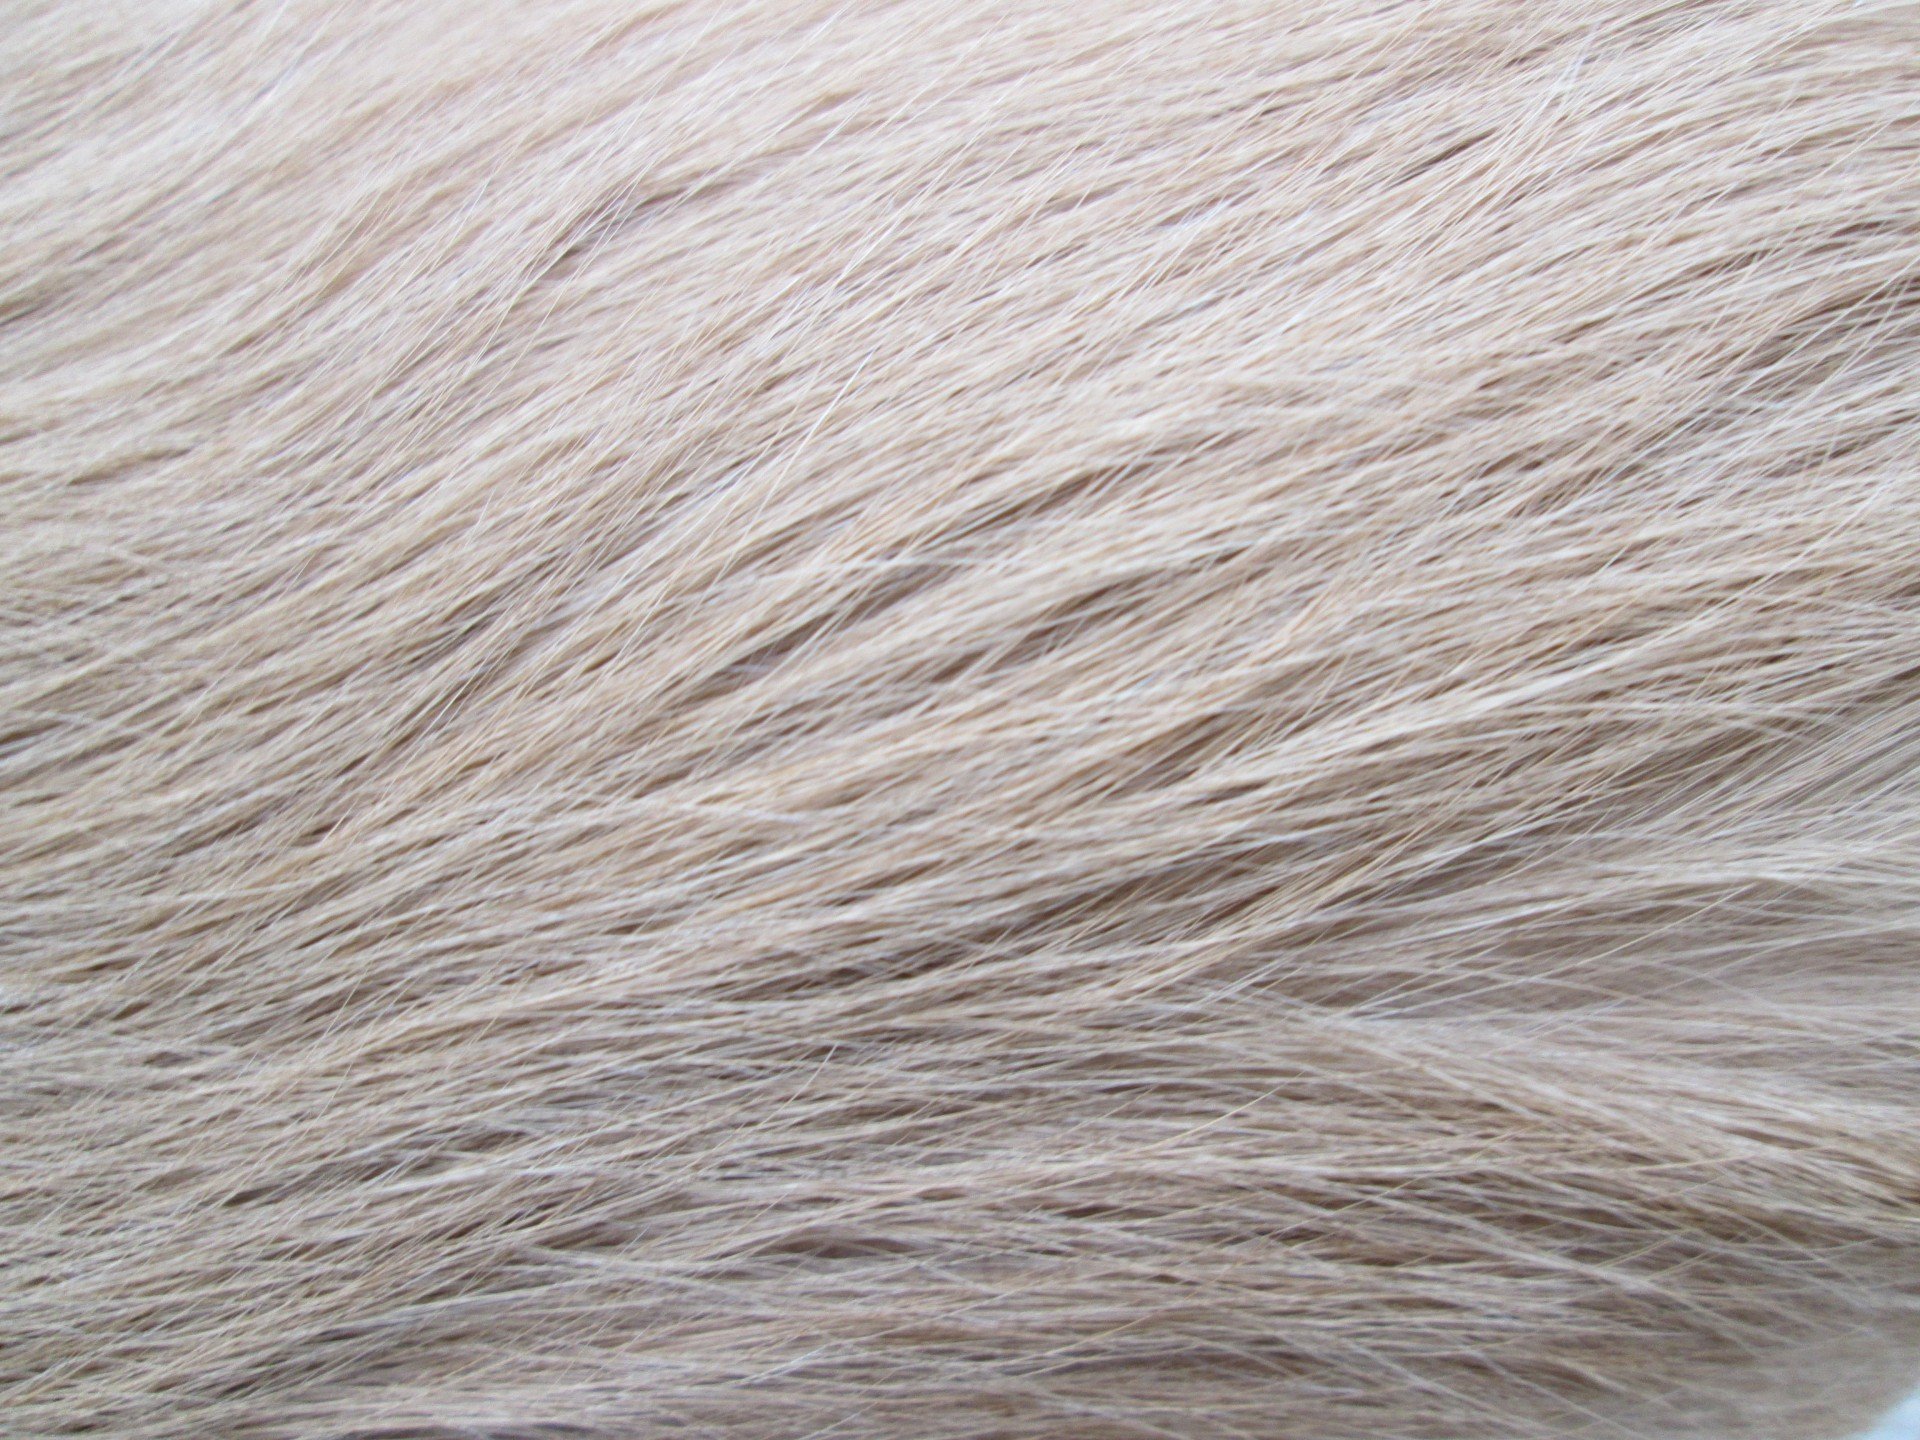 Обычная шерсть собаки. Текстура шерсти. Шерсть собаки. Белая шерсть. Серая шерсть.